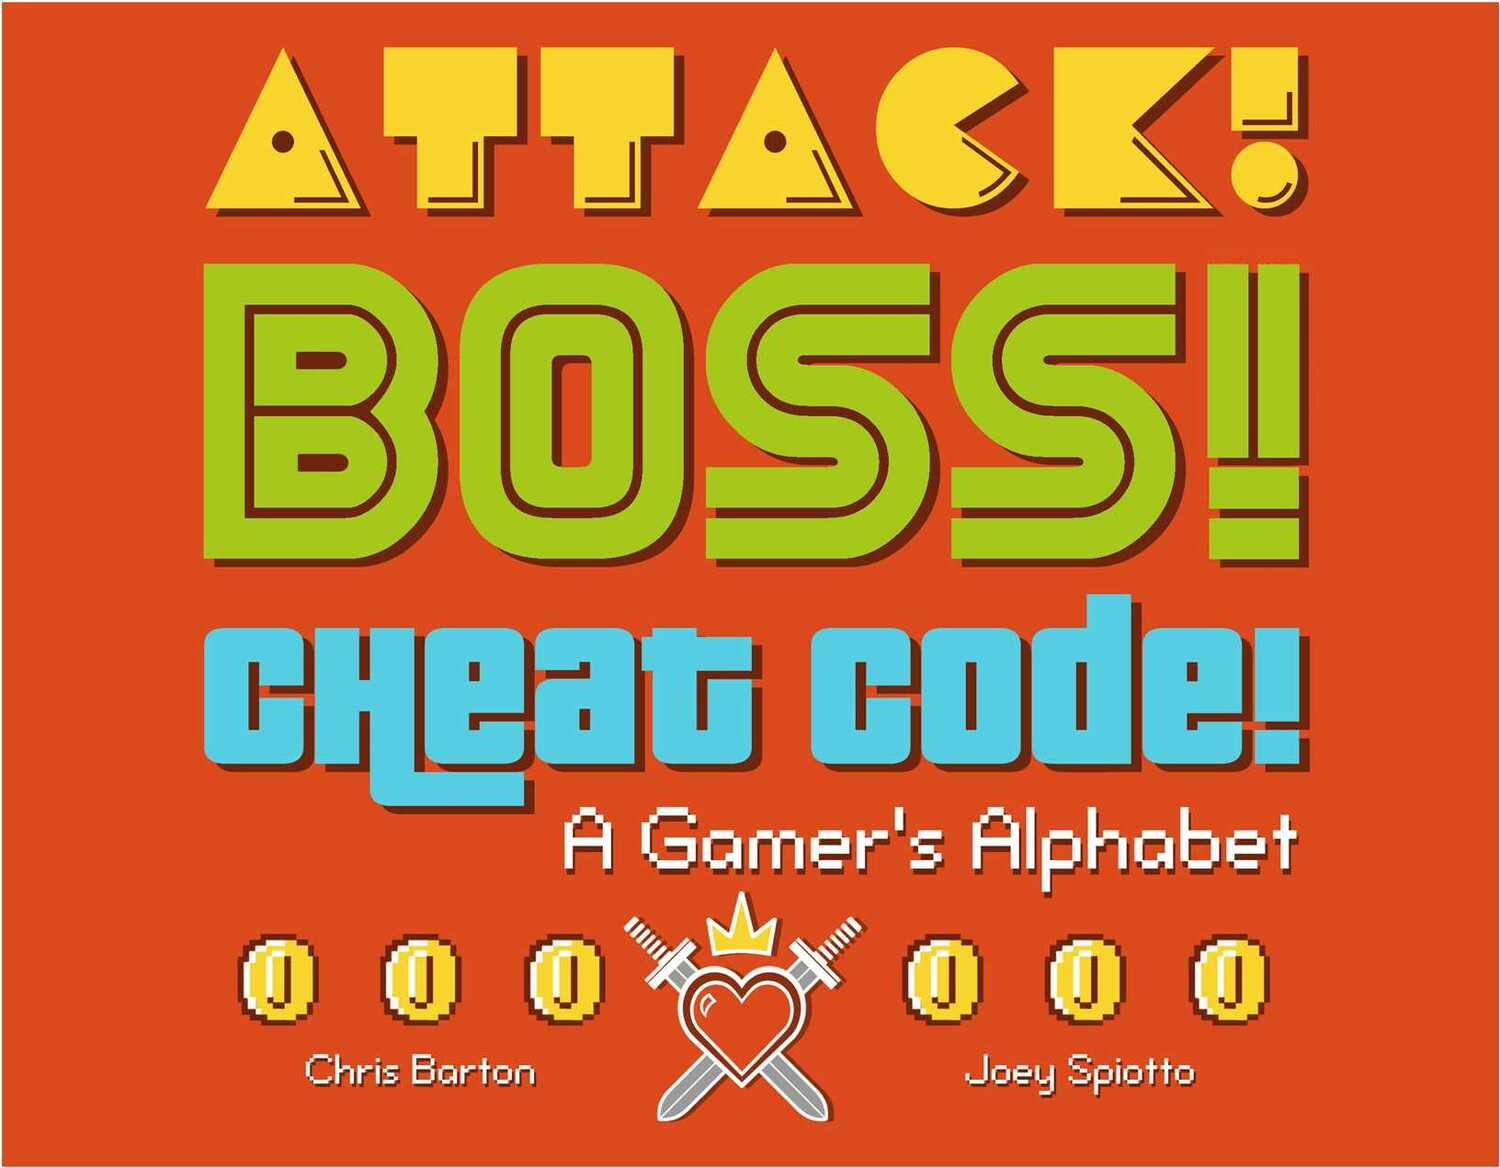 Attack! Boss! Cheat Code!